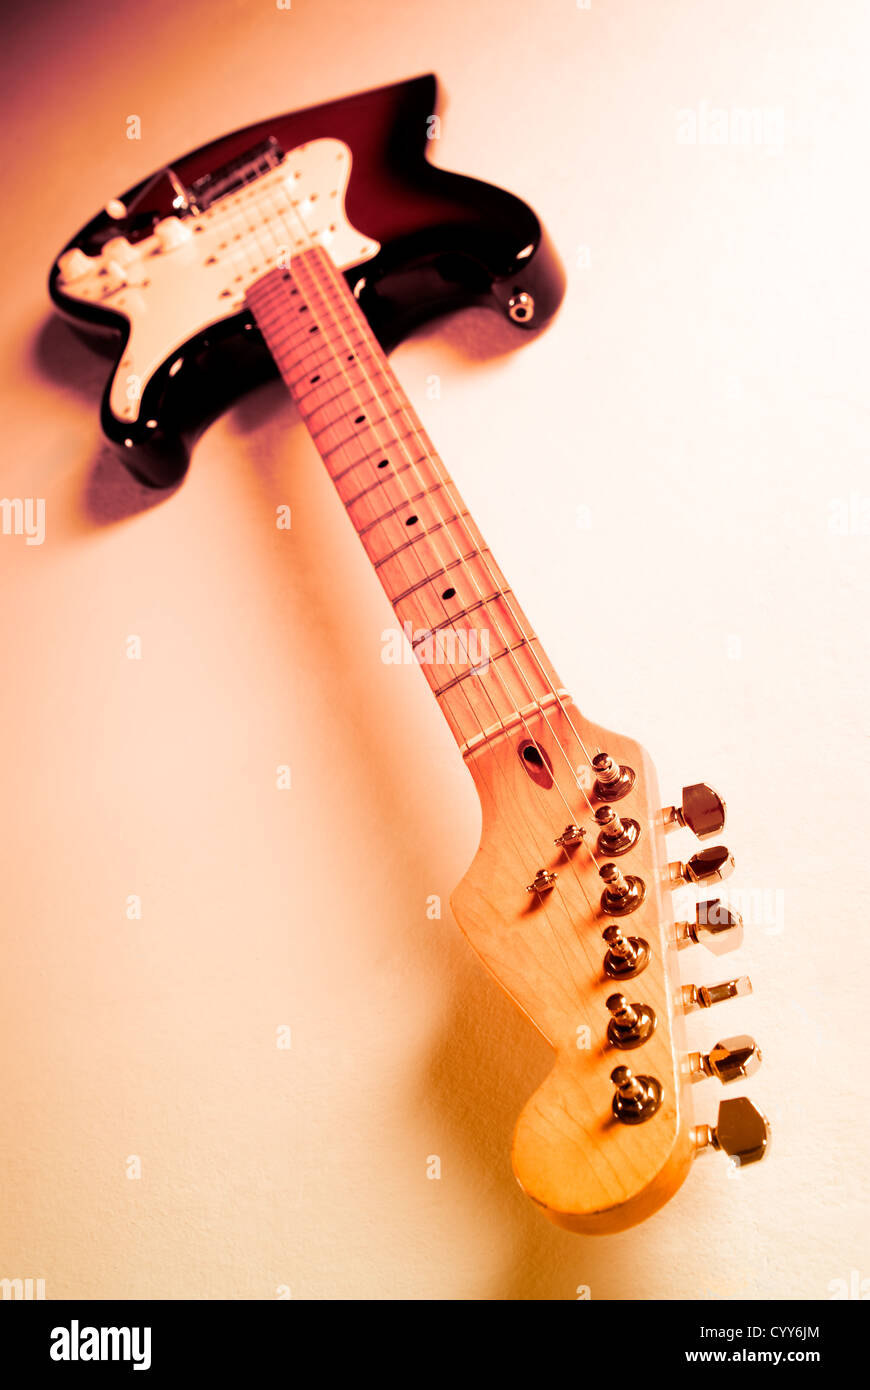 Ampia angolazione di una chitarra elettrica con sistema di illuminazione multicolore. Foto Stock